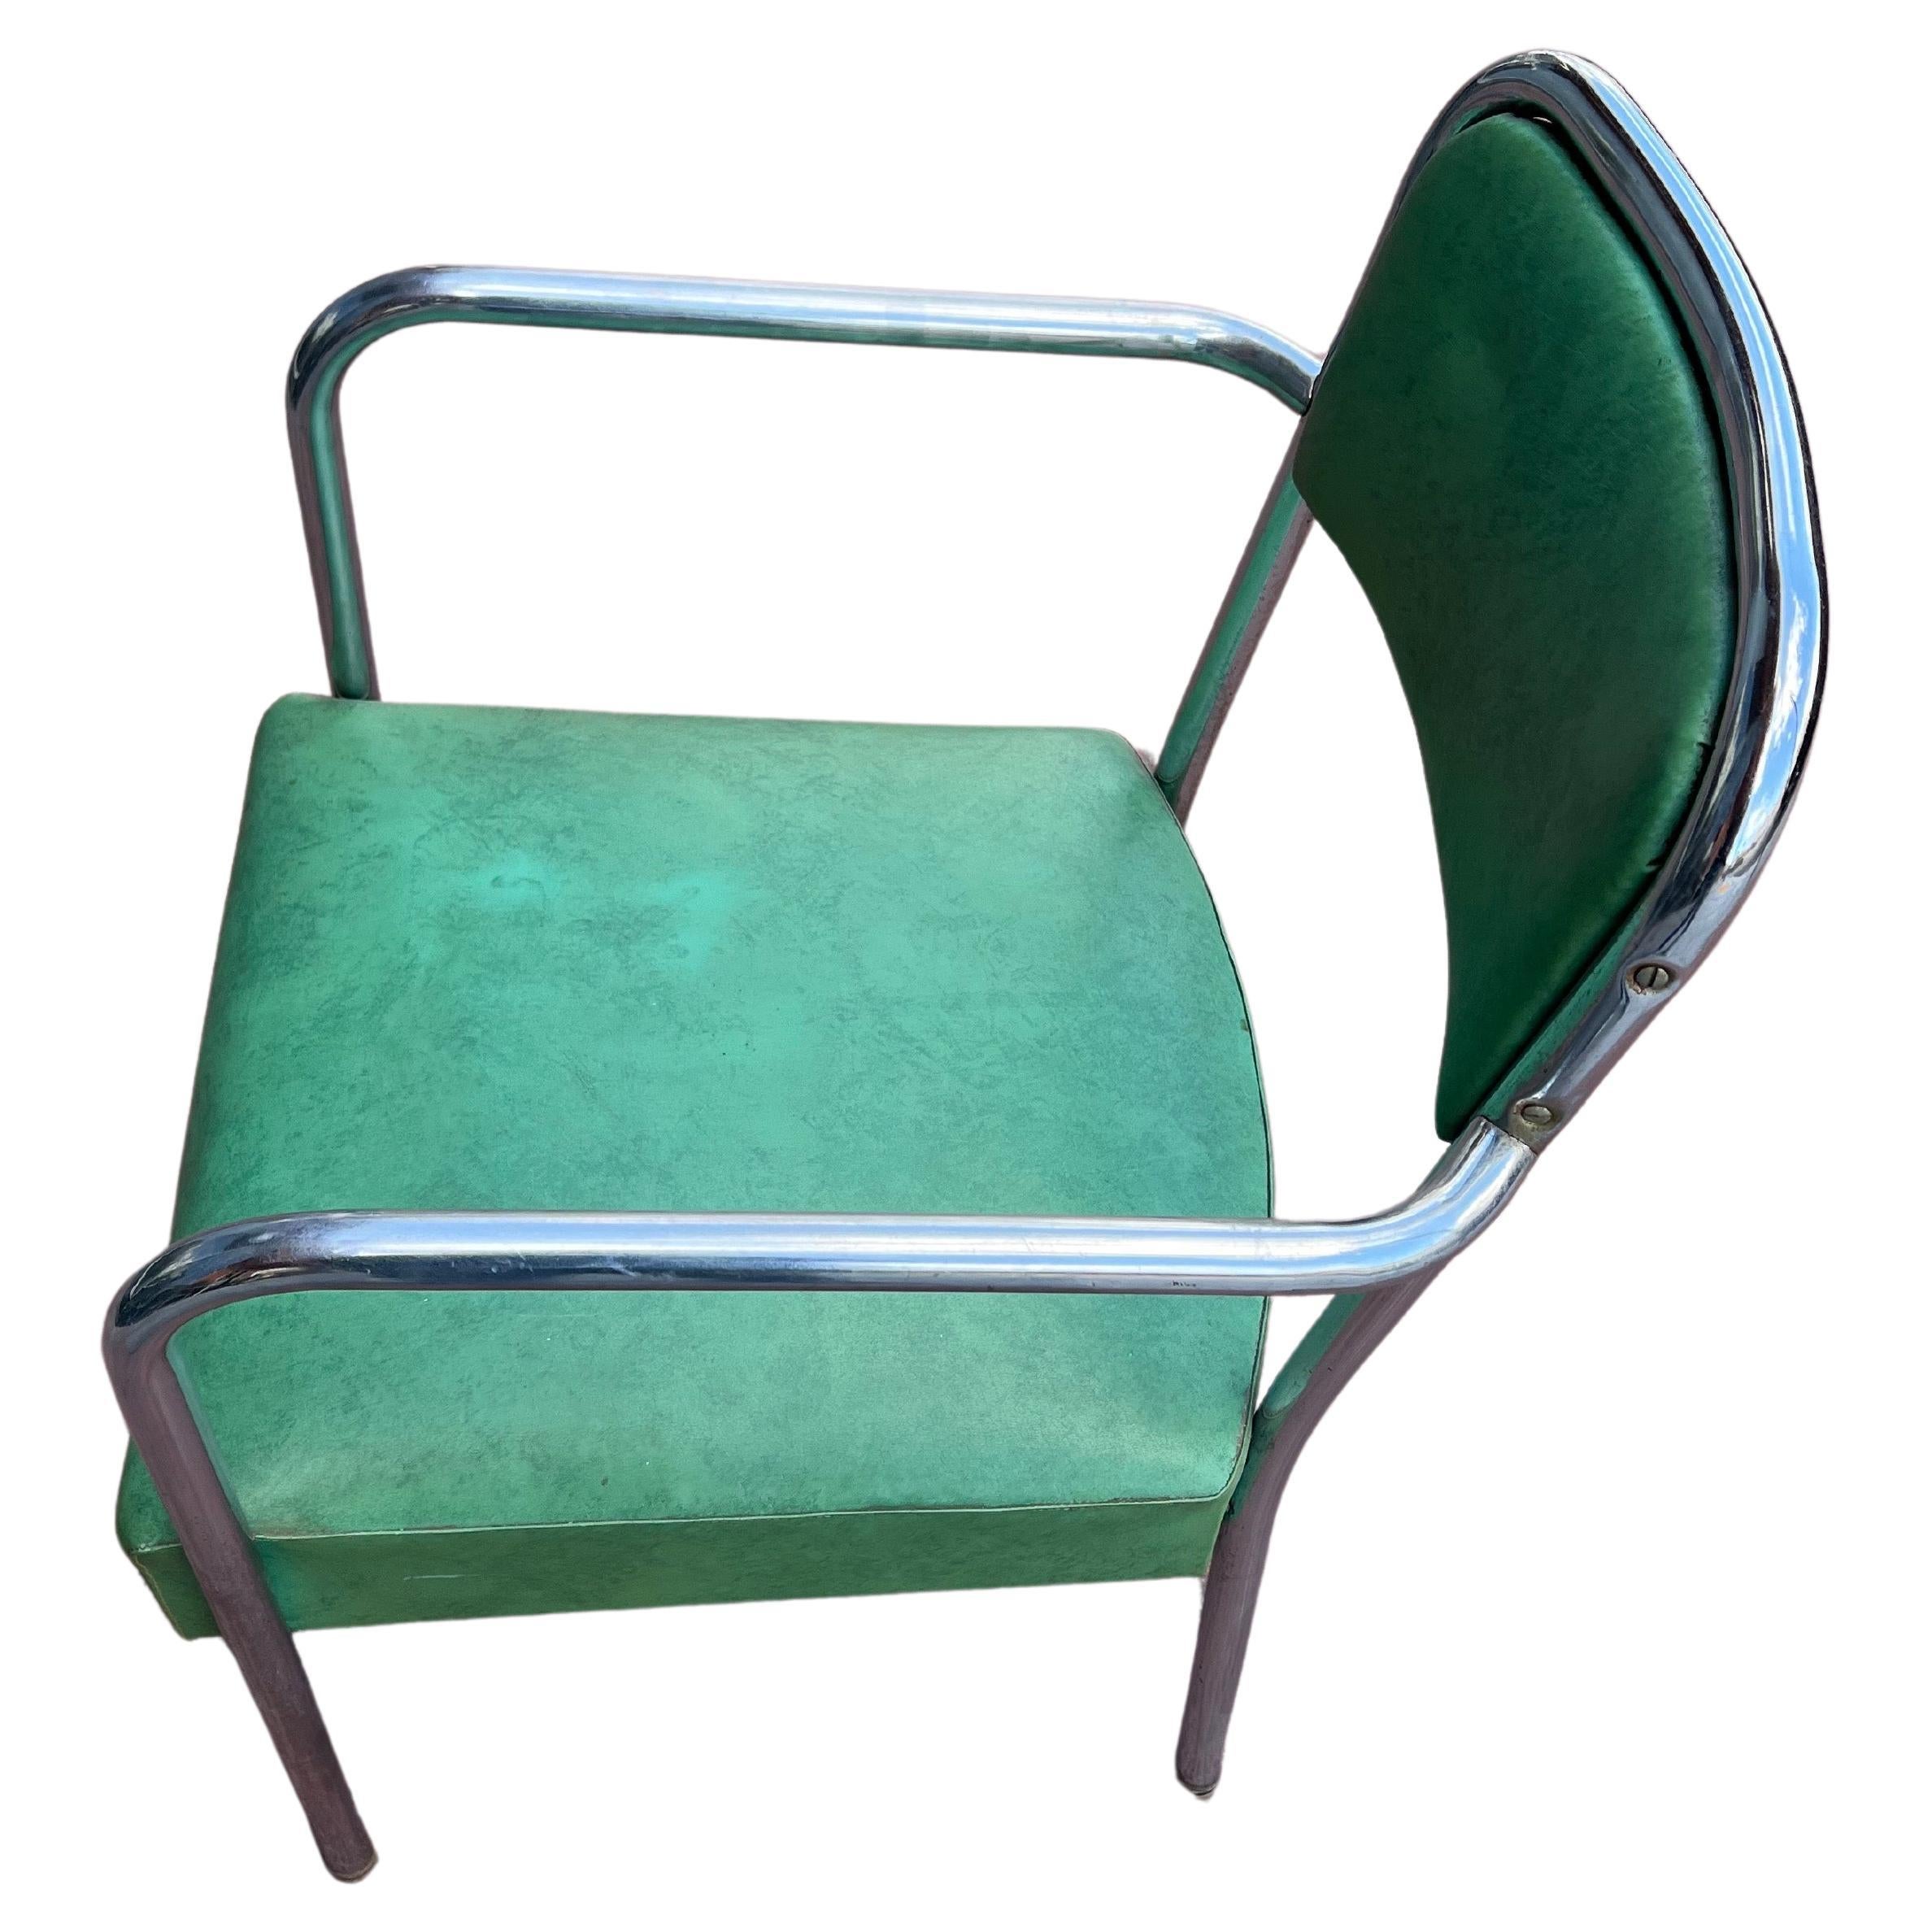 Lassen Sie sich in das goldene Zeitalter des Designs entführen mit diesem verchromten Art-Déco-Sessel, der den ikonischen Stil eines klassischen Friseursalons widerspiegelt. Er wird dem geschätzten Designer Kem Weber zugeschrieben und wurde in den